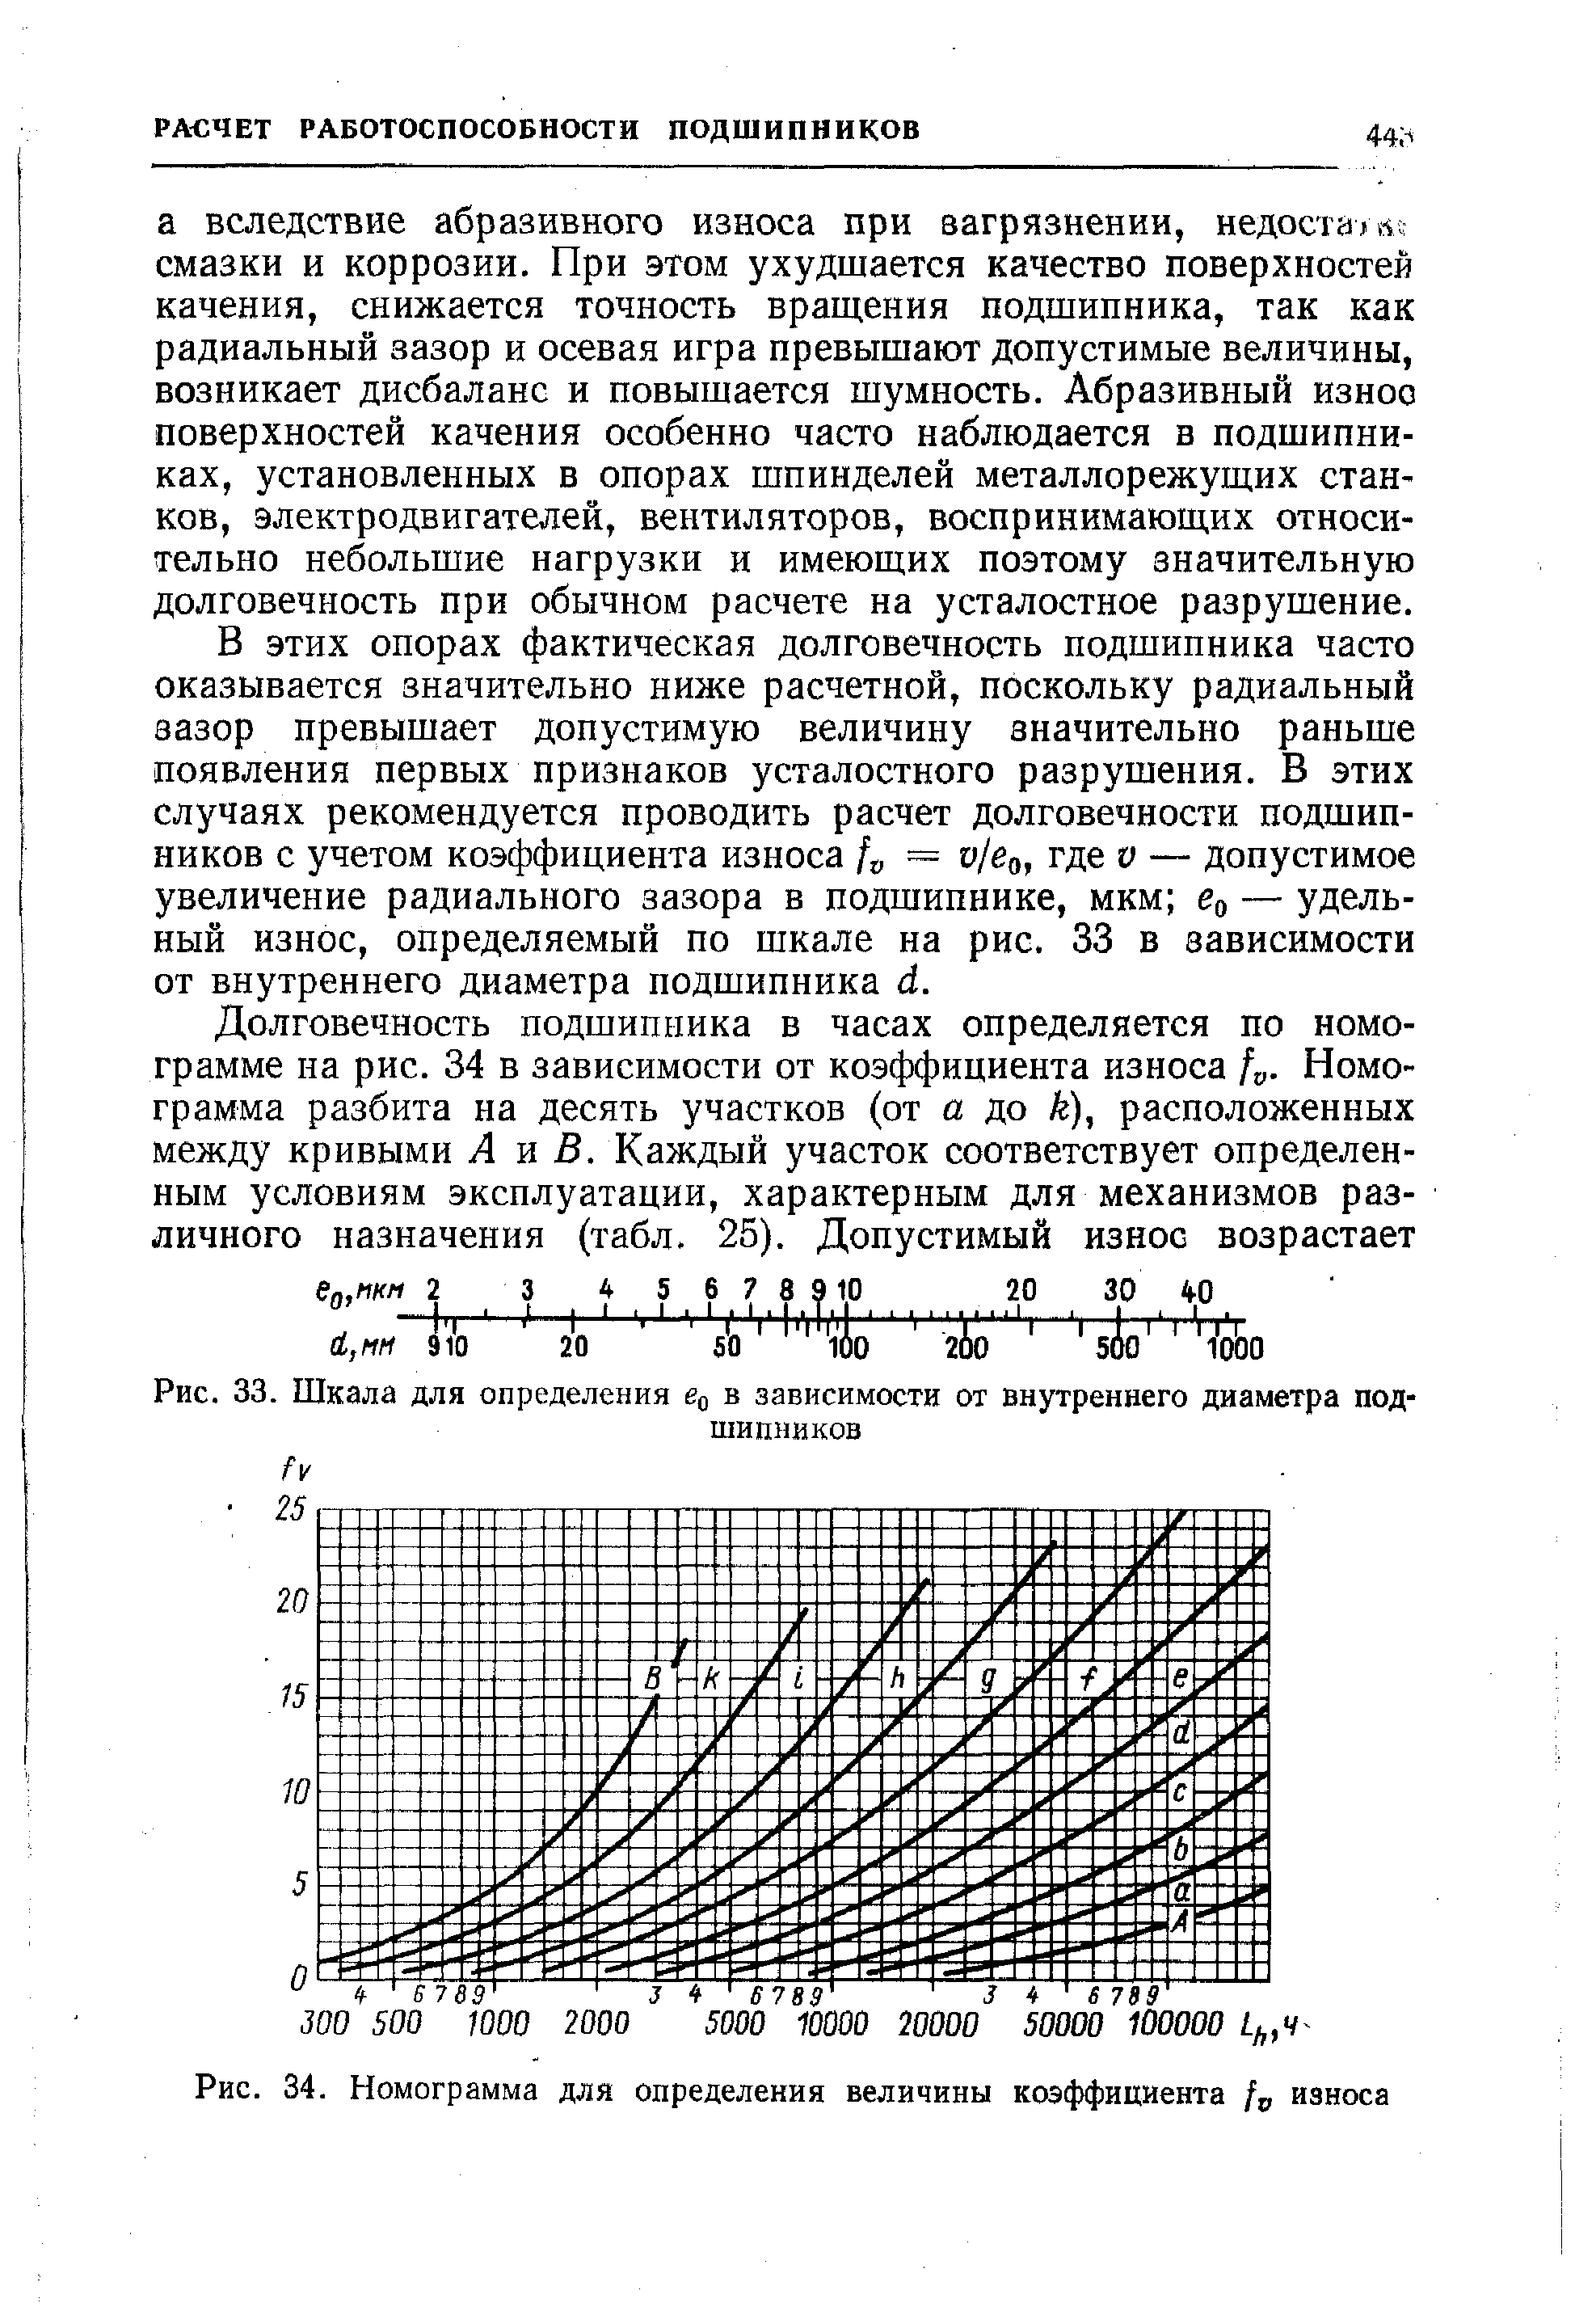 Рис. 33. Шкала для определения йо в зависимости от внутреннего диаметра подшипников
